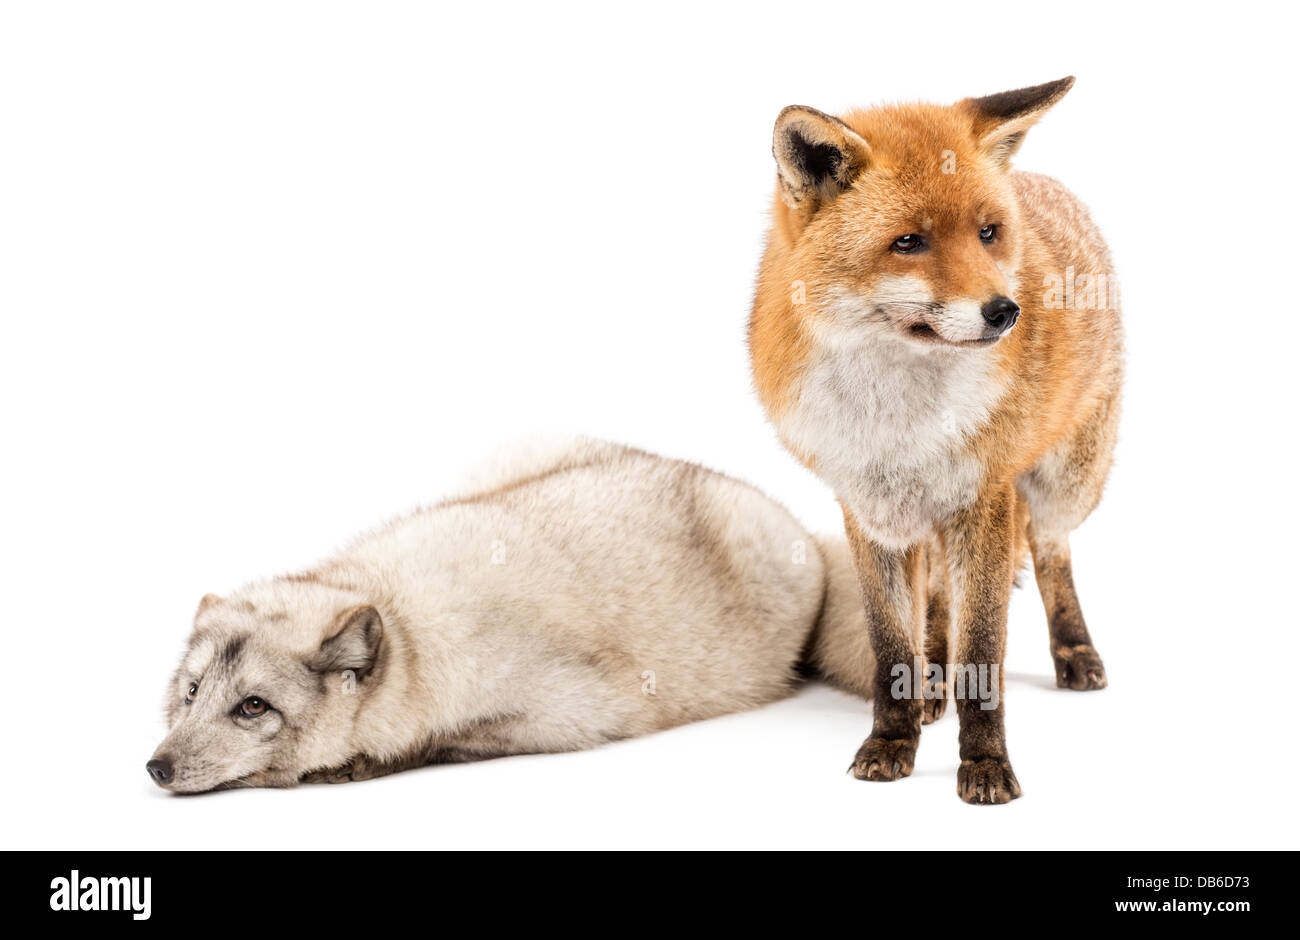 Le renard roux, Vulpes vulpes, debout à côté de renard arctique, Vulpes lagopus, avoir menti sur fond blanc Banque D'Images